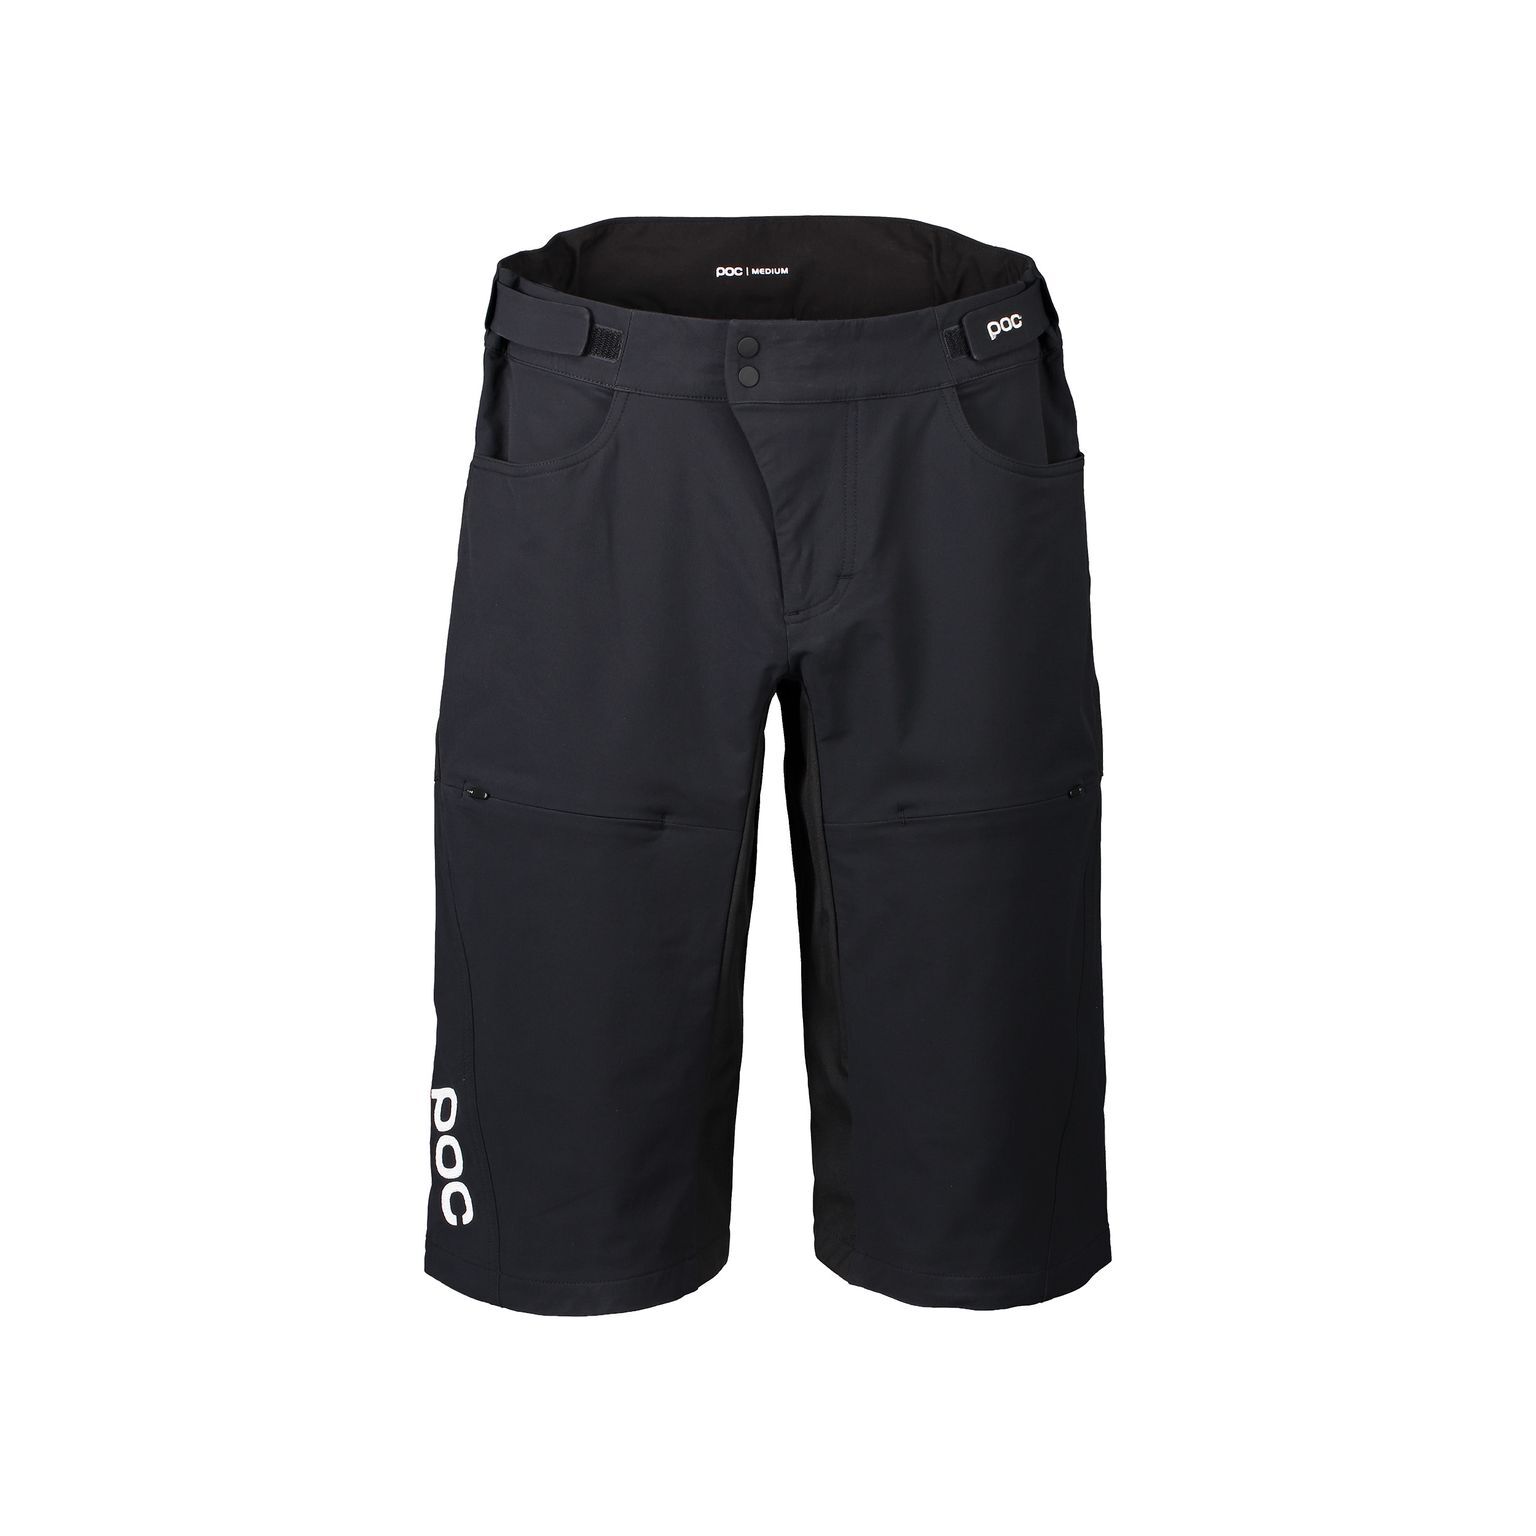 Poc Essential DH Shorts - Pantaloncini MTB - Uomo